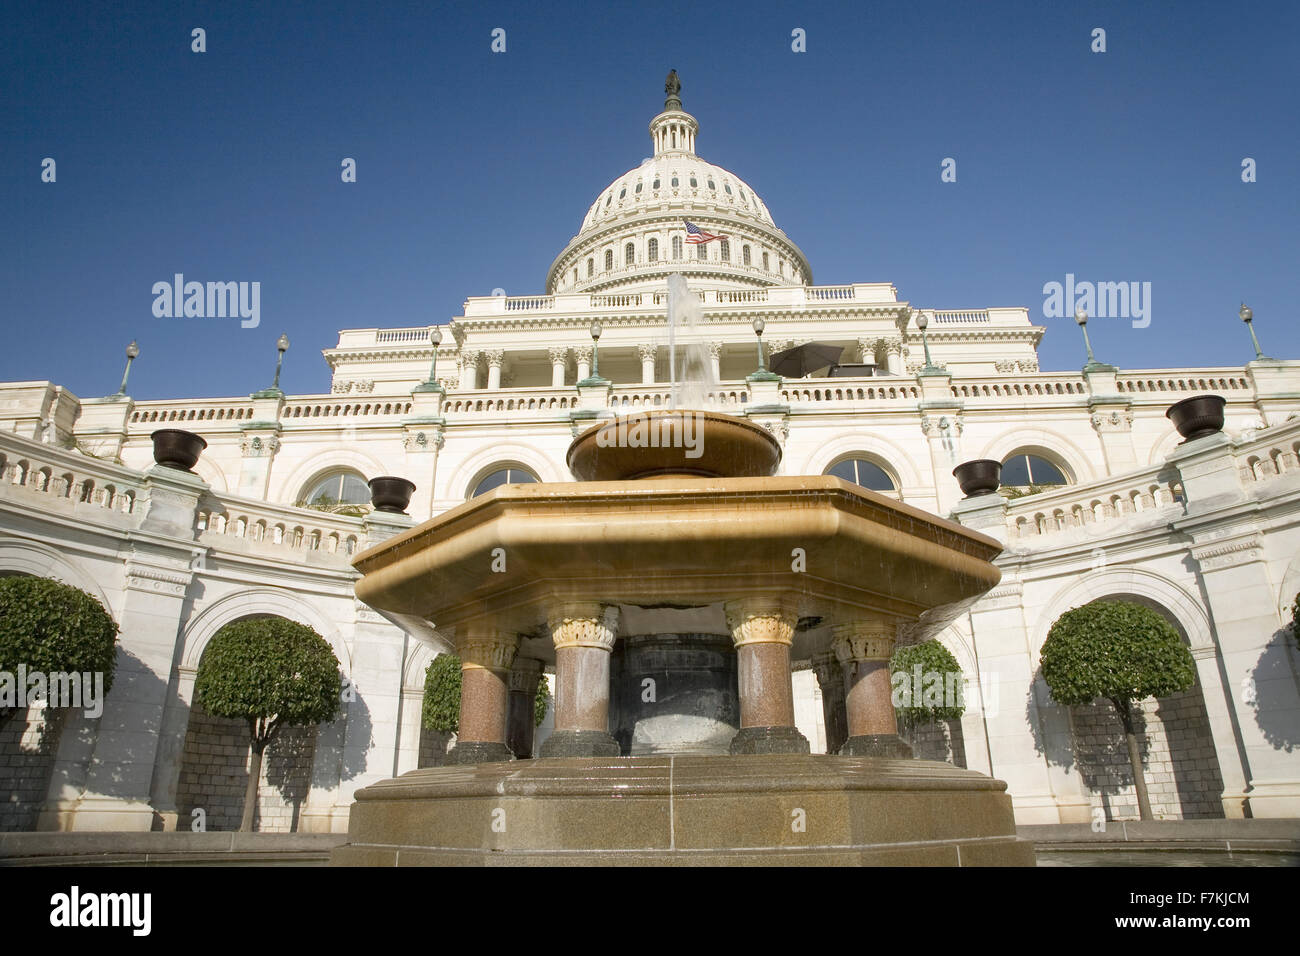 Fuente de agua con Capitolio de EE.UU. en el fondo, Washington, D.C. Foto de stock